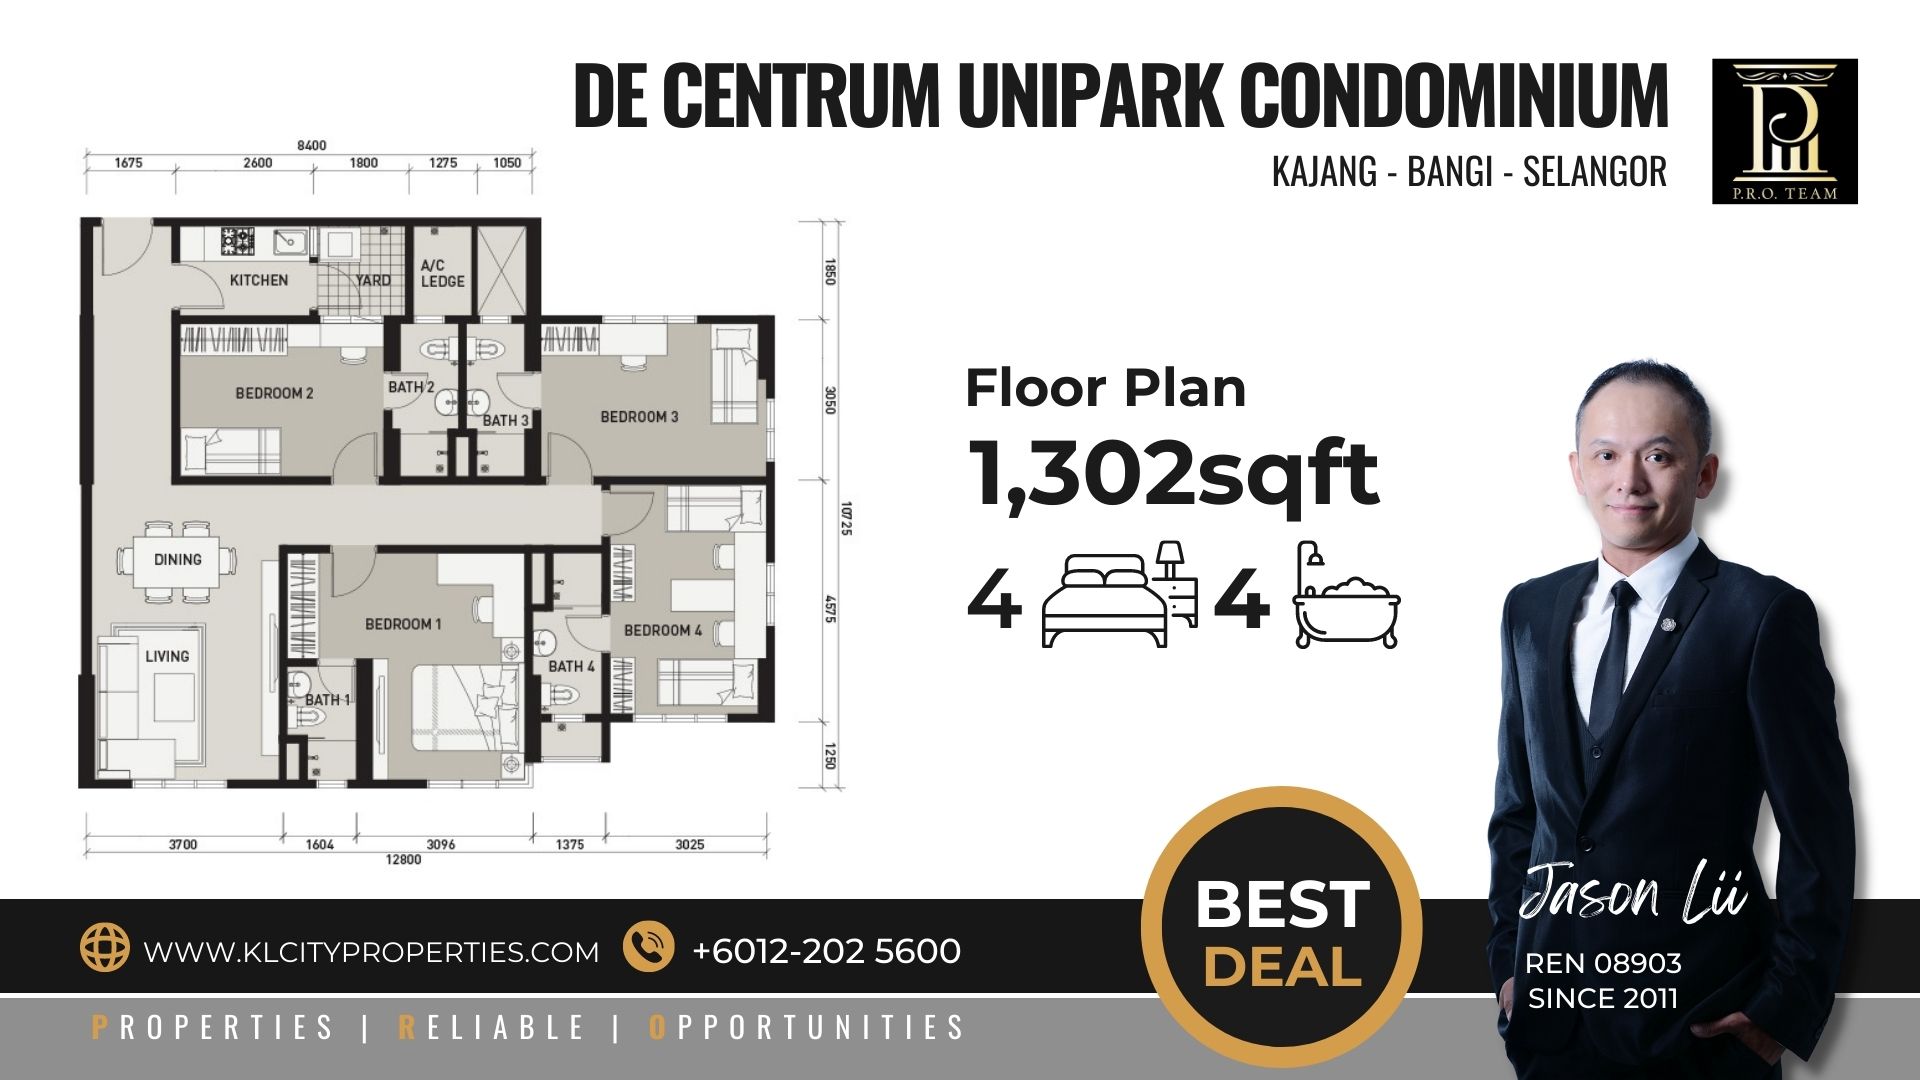 Unipark Condominium 4R4B 1,302sqft Floor Plan